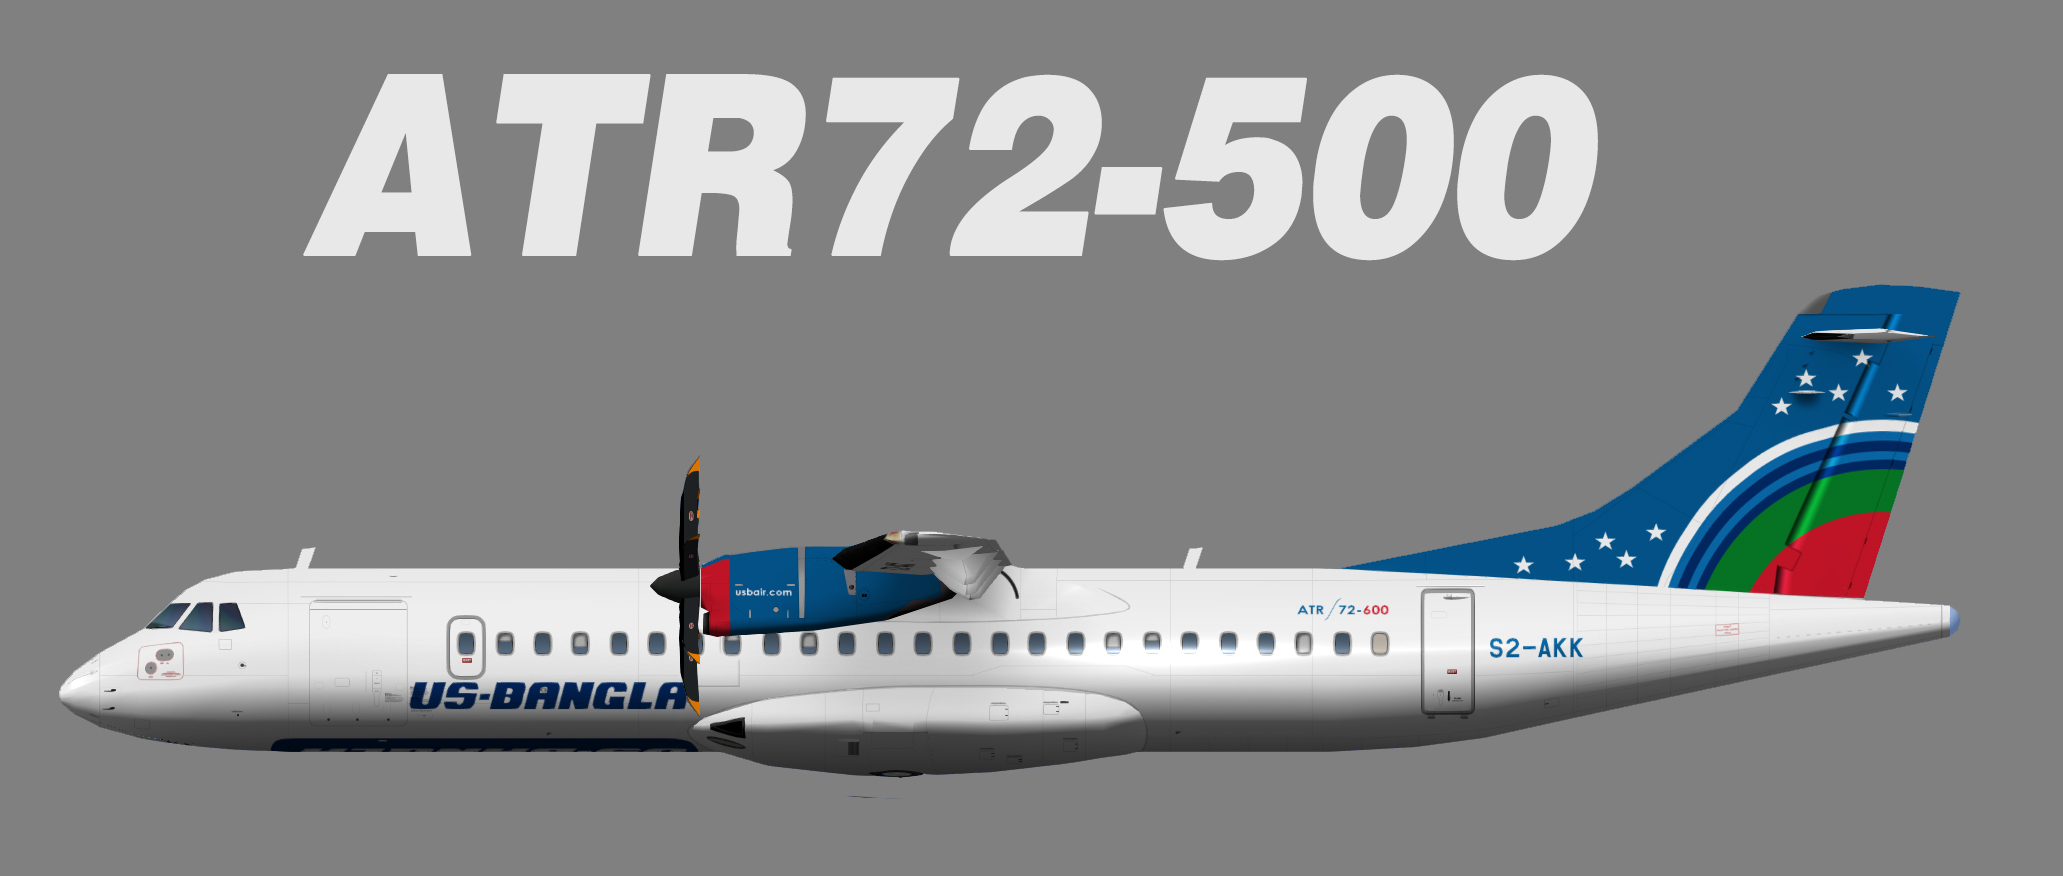 US-Bangla Airlines ATR72-600